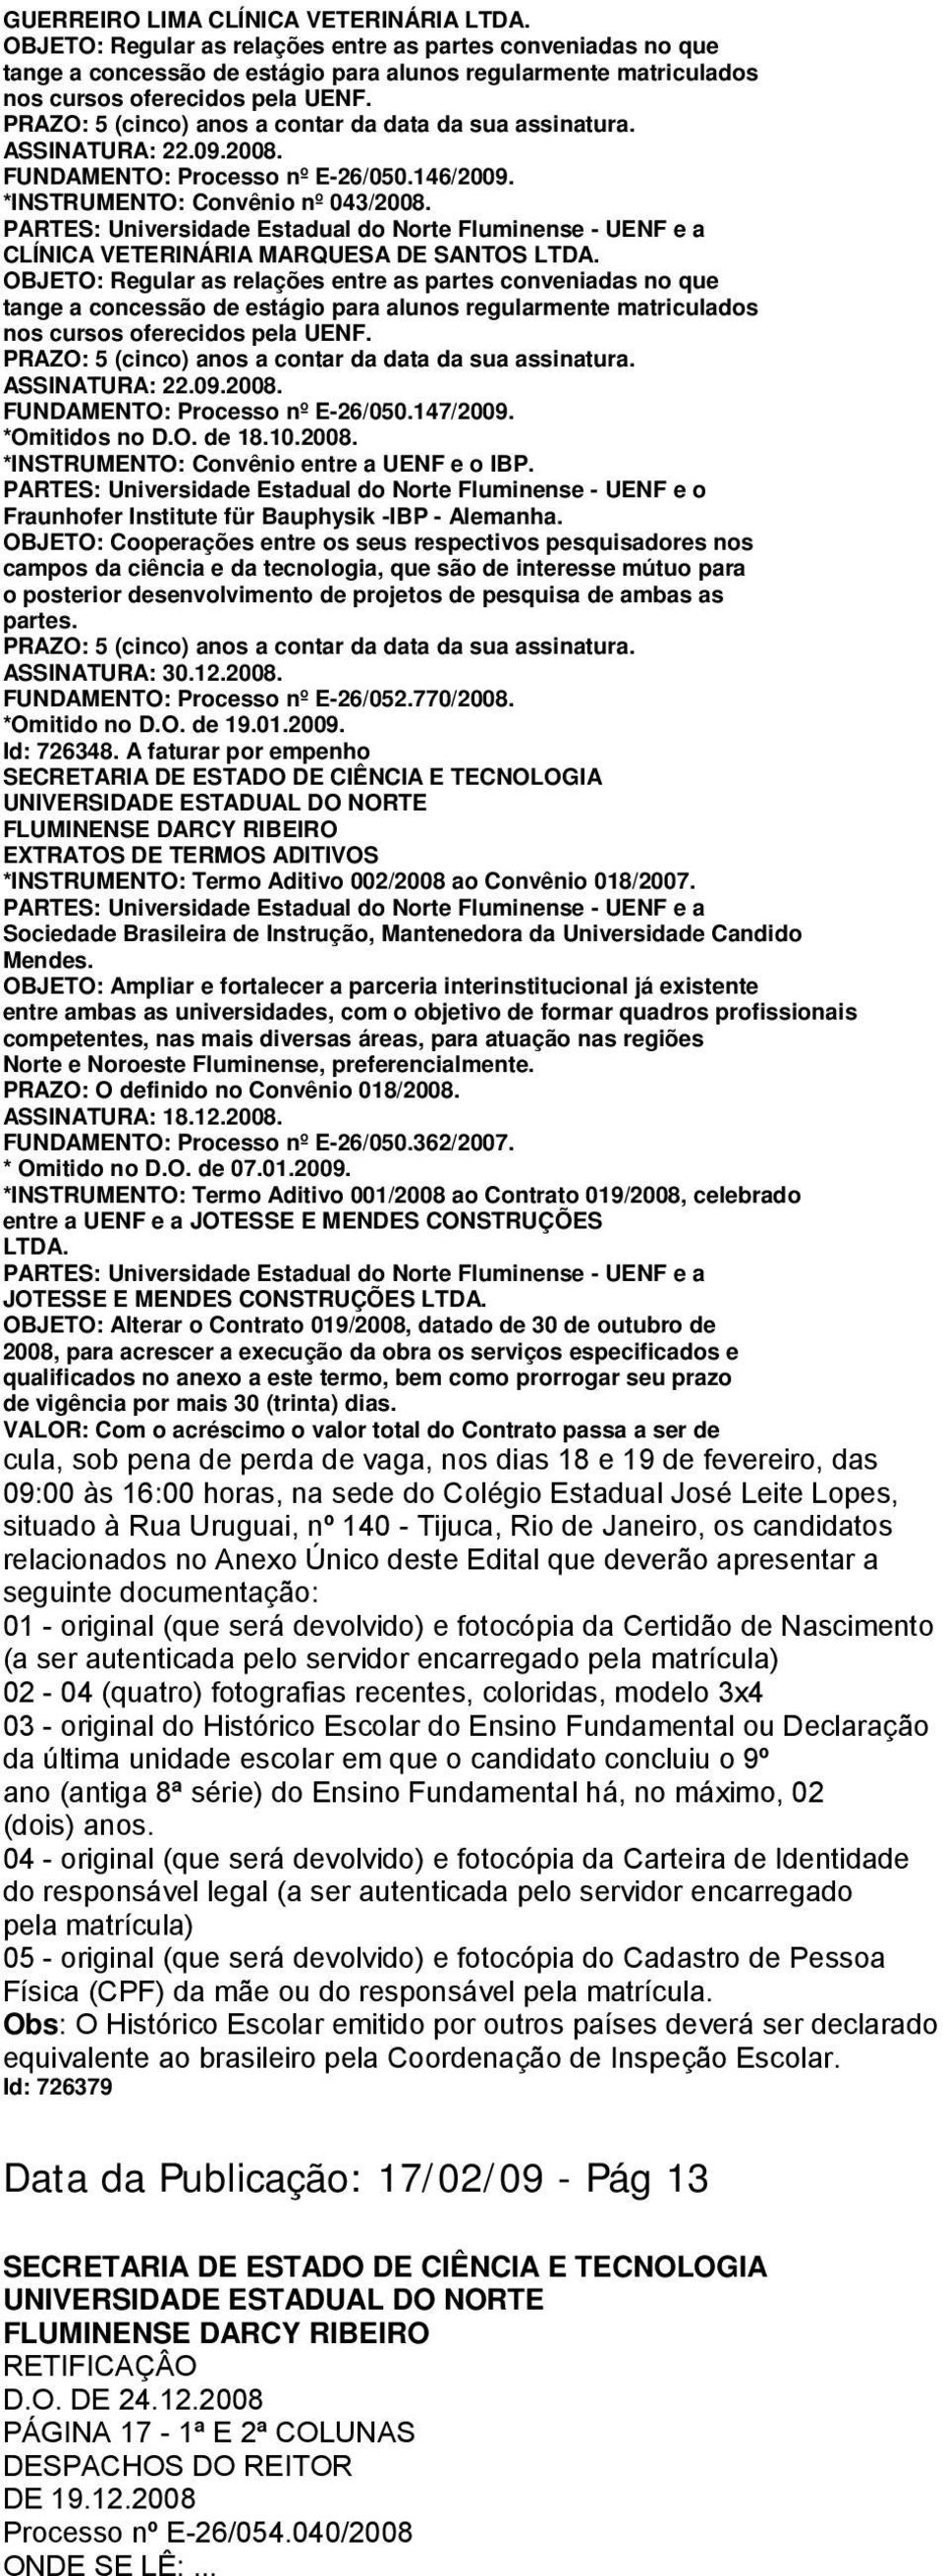 PARTES: Universidade Estadual do Norte Fluminense - UENF e o Fraunhofer Institute für Bauphysik -IBP - Alemanha.